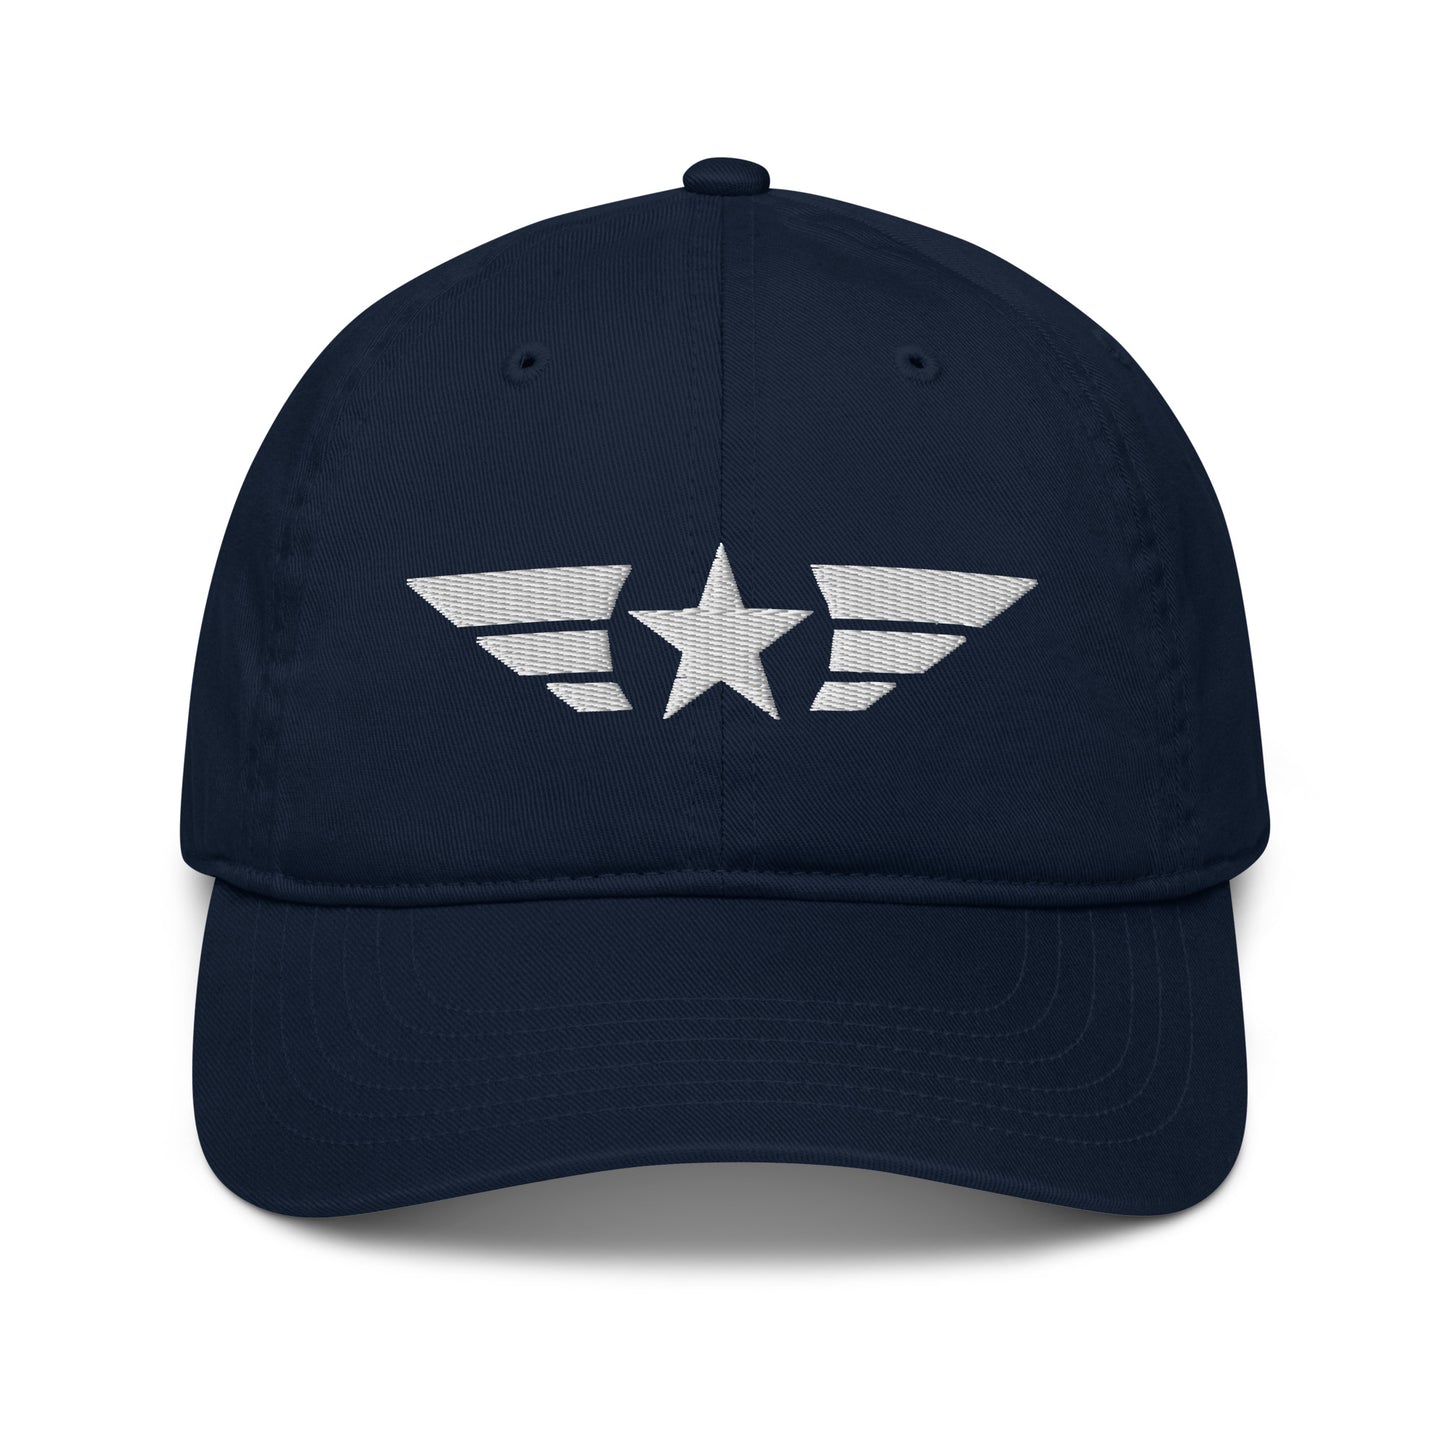 STAR CLASSIC CAP